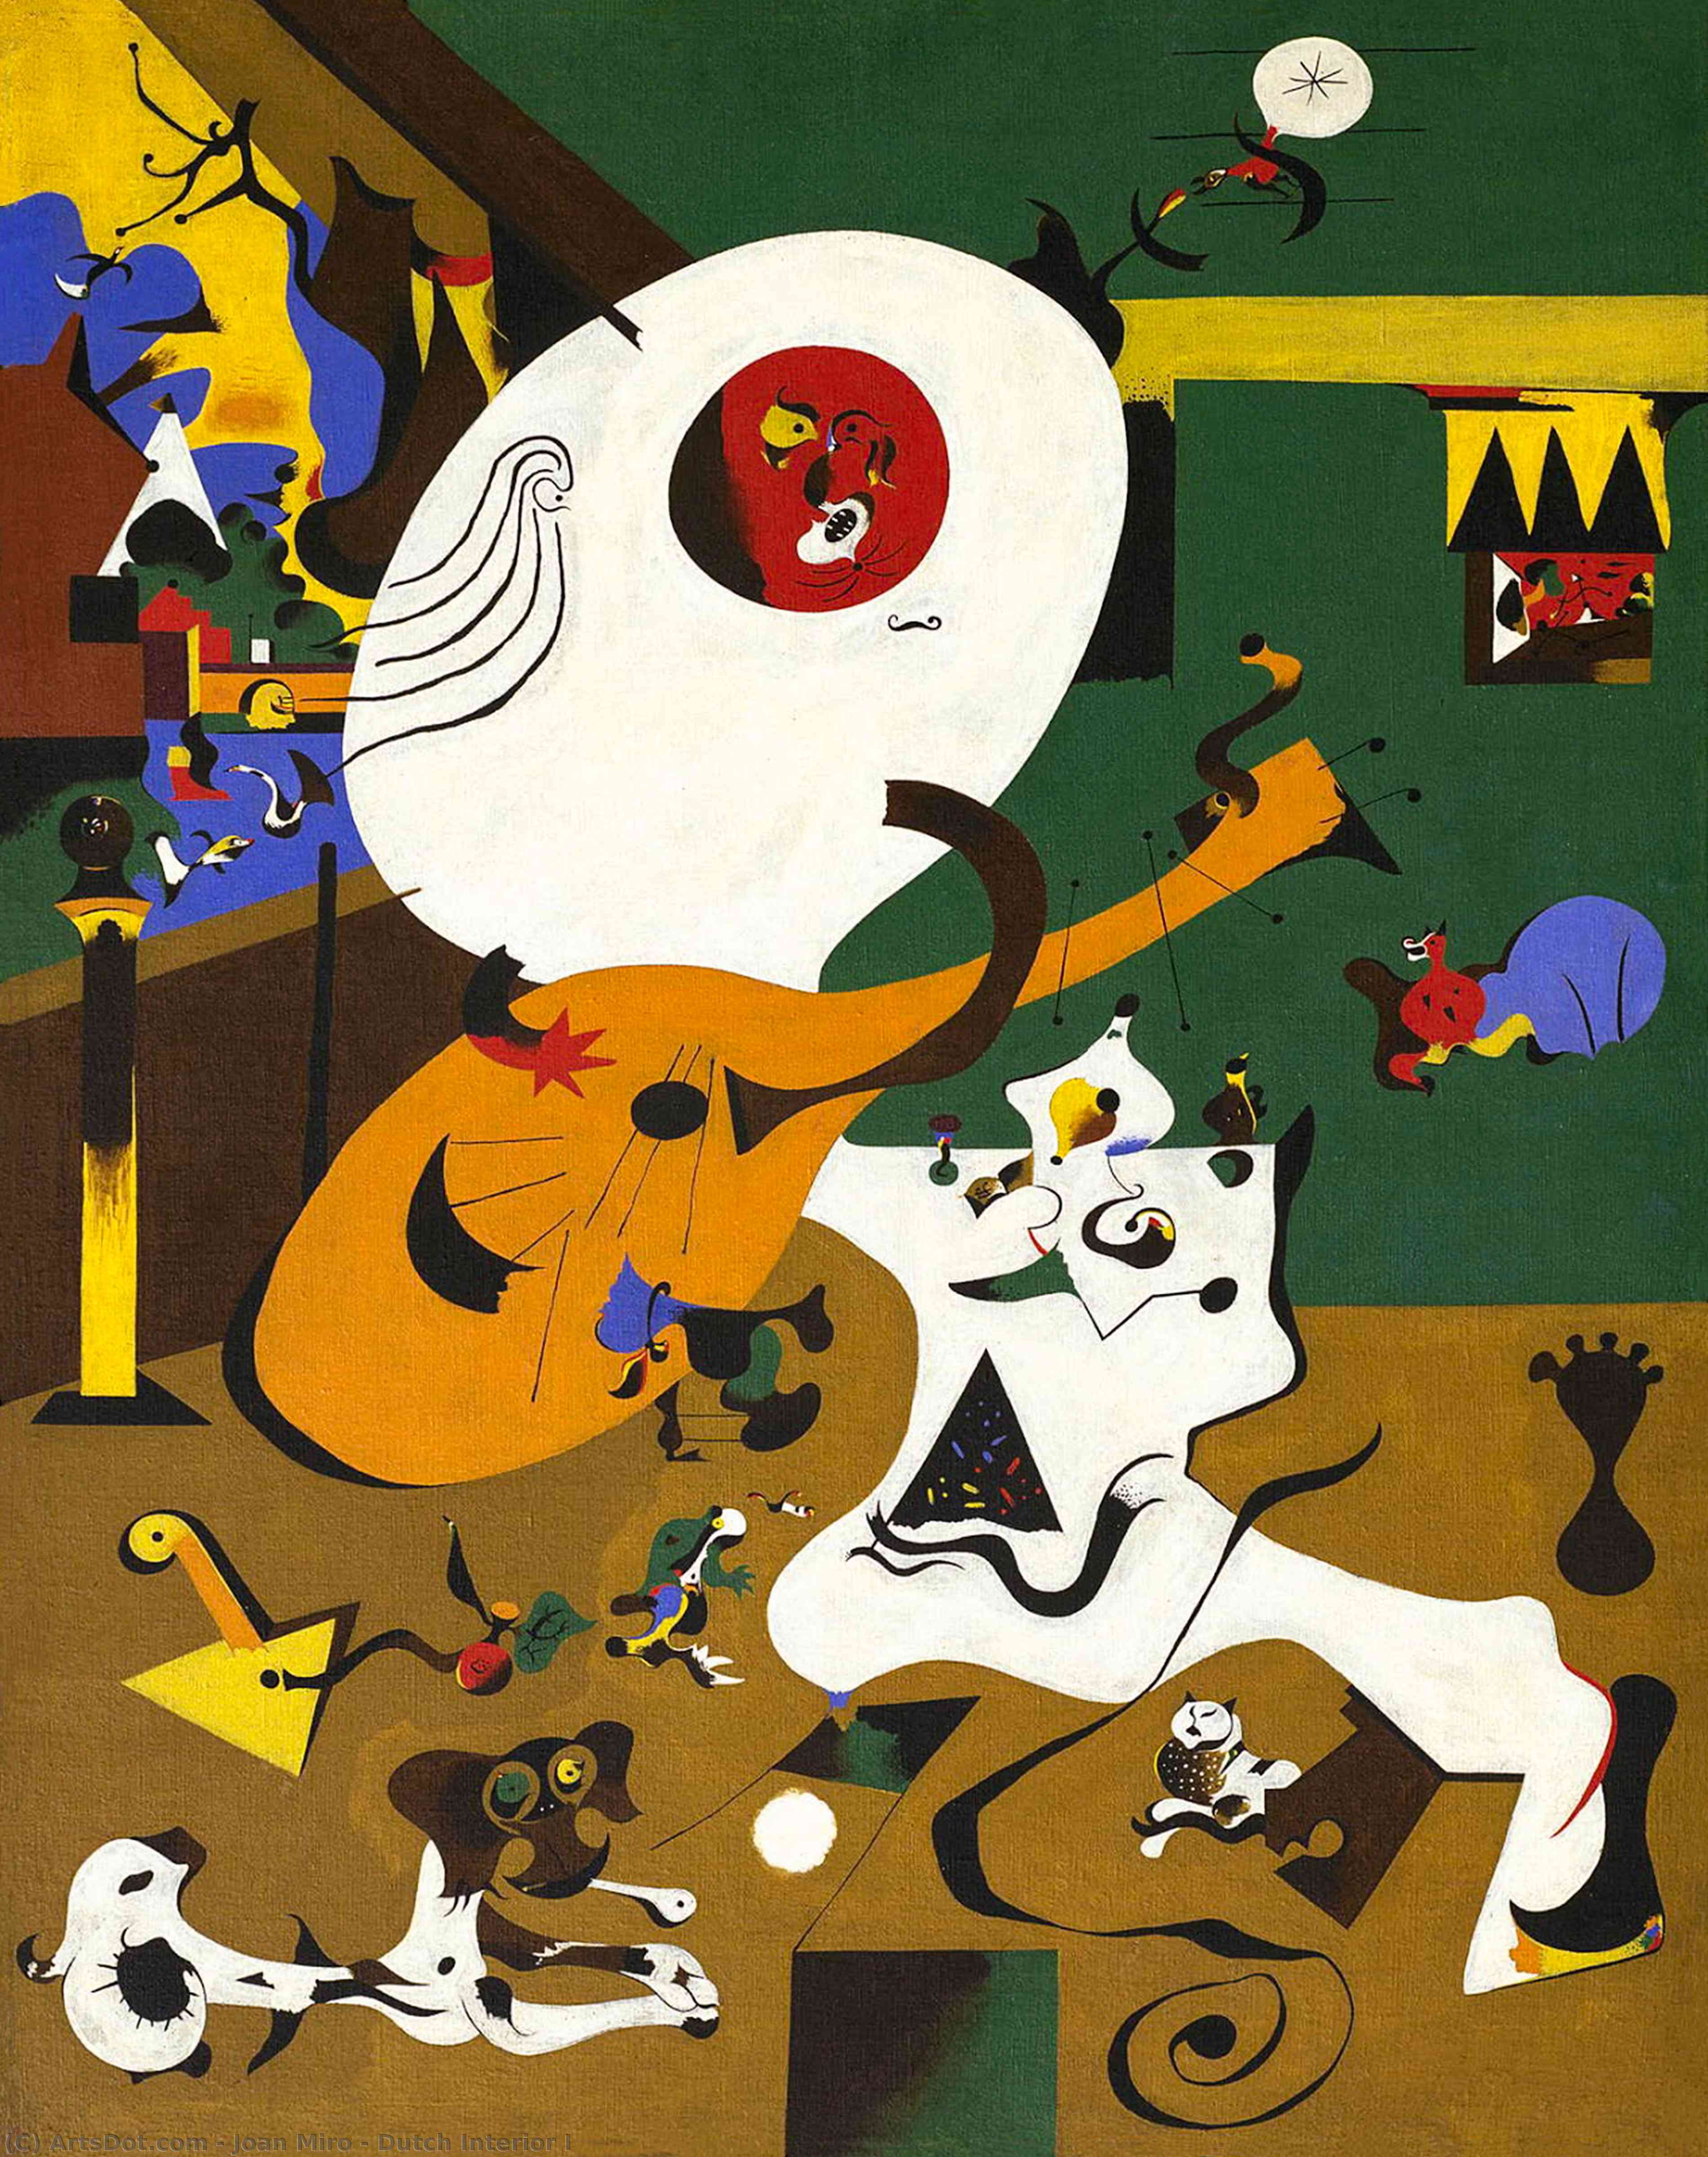 Acheter Reproductions D'art De Musée Intérieur néerlandais Les, 1928 de Joan Miró (Inspiré par) (1893-1983, Spain) | ArtsDot.com